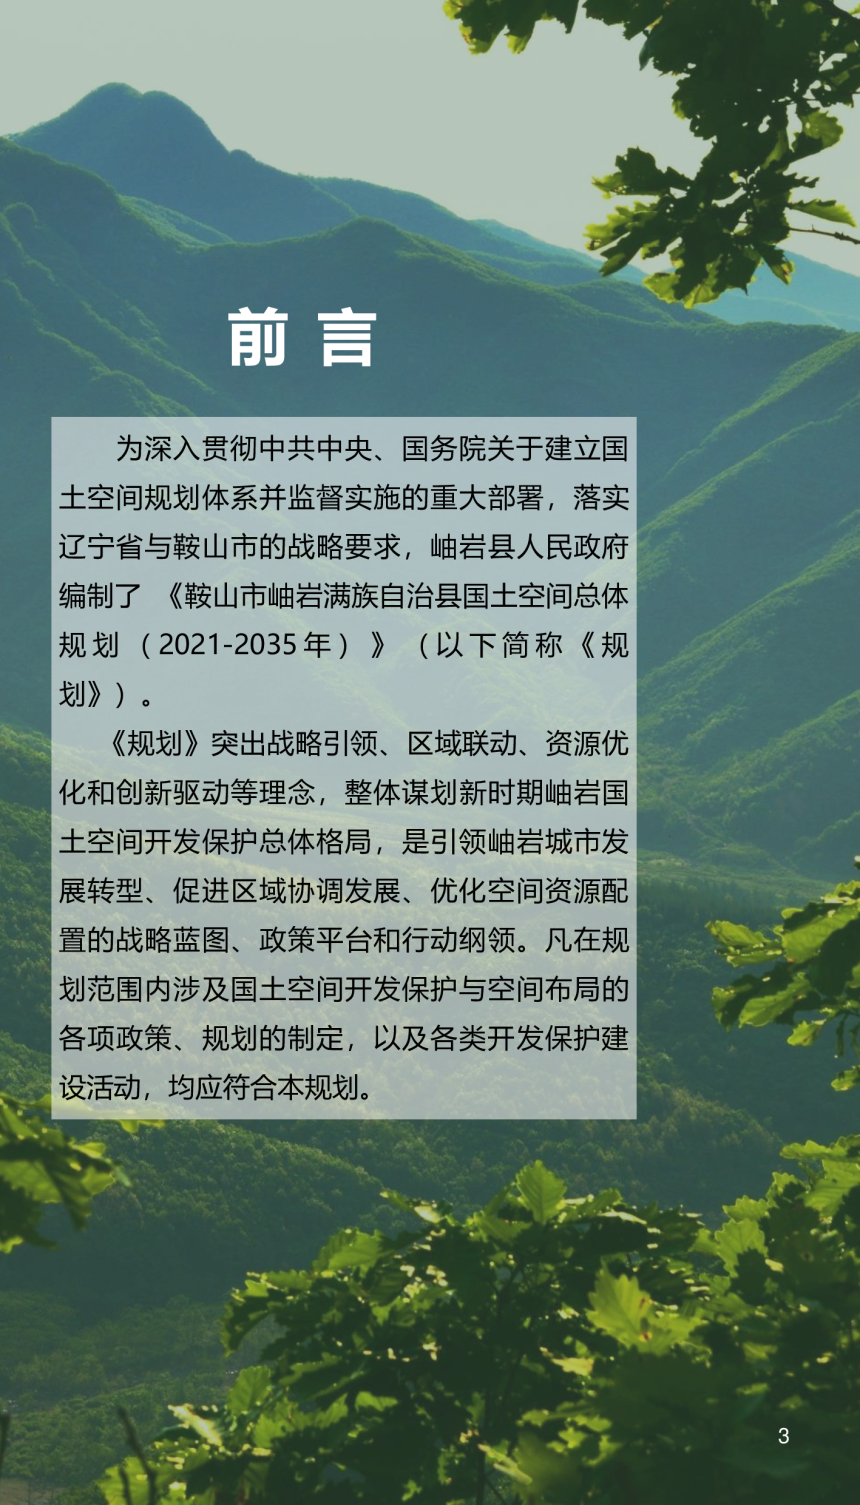 辽宁省岫岩满族自治县国土空间总体规划（2021-2035年）-3